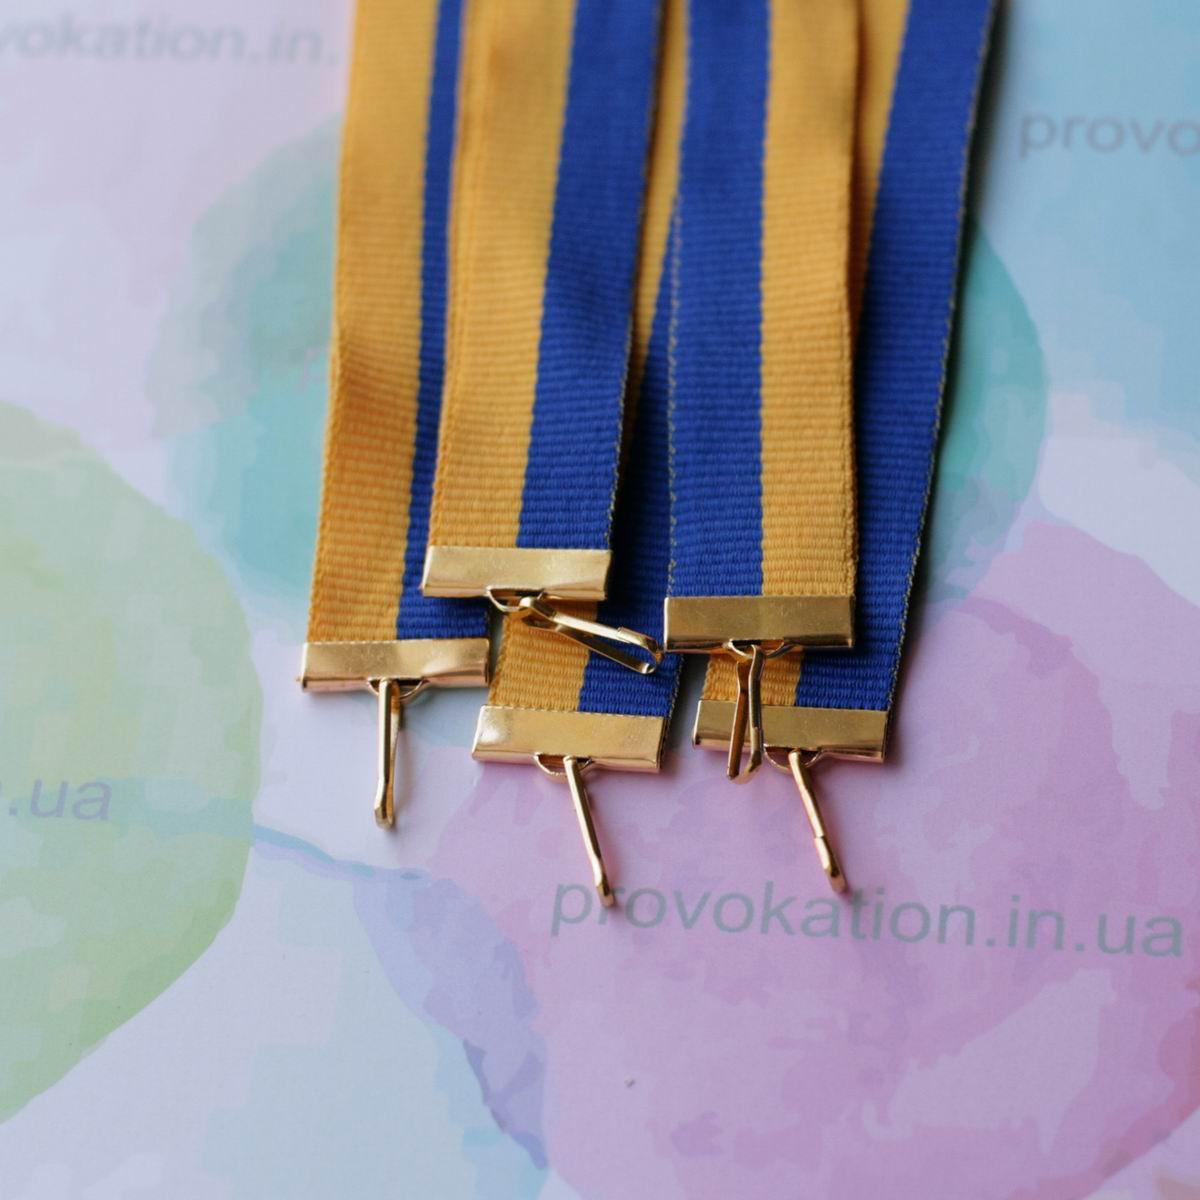 Репсова стрічка для медалей і нагород, жовто-синя, 20мм, 75см, фото 1